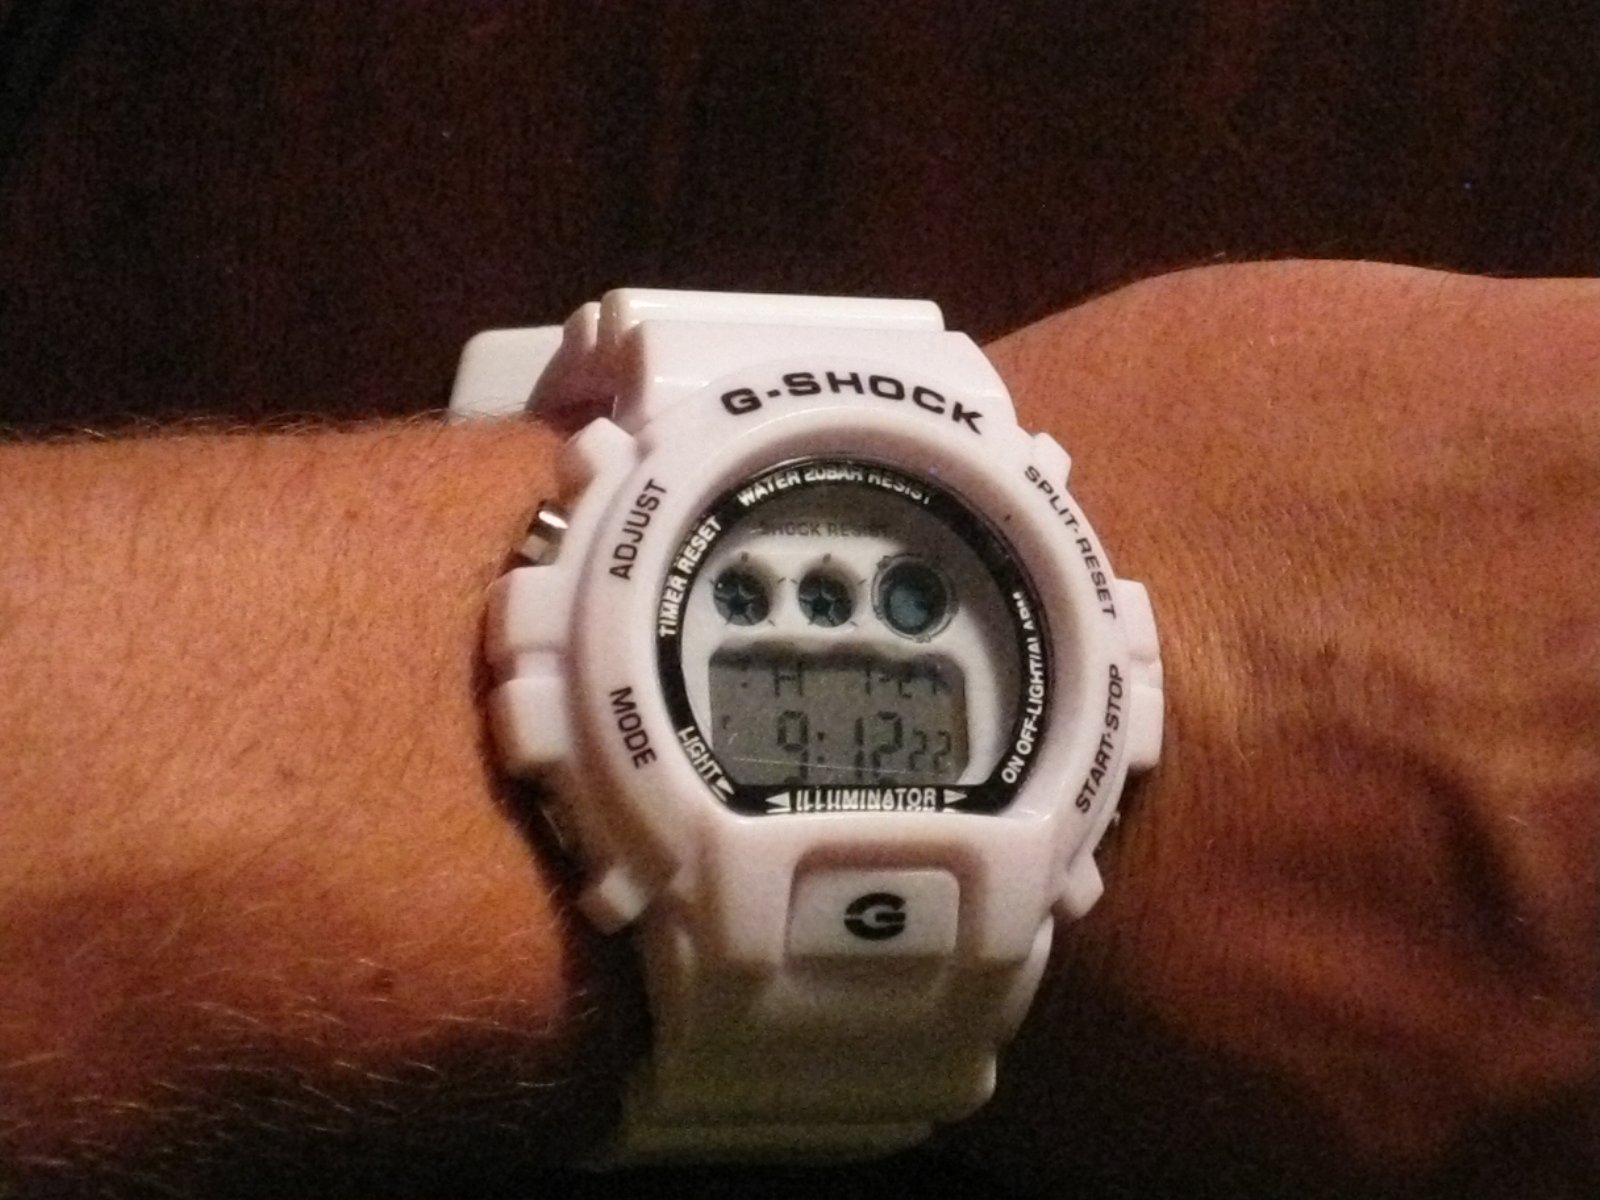 White g-shock watch